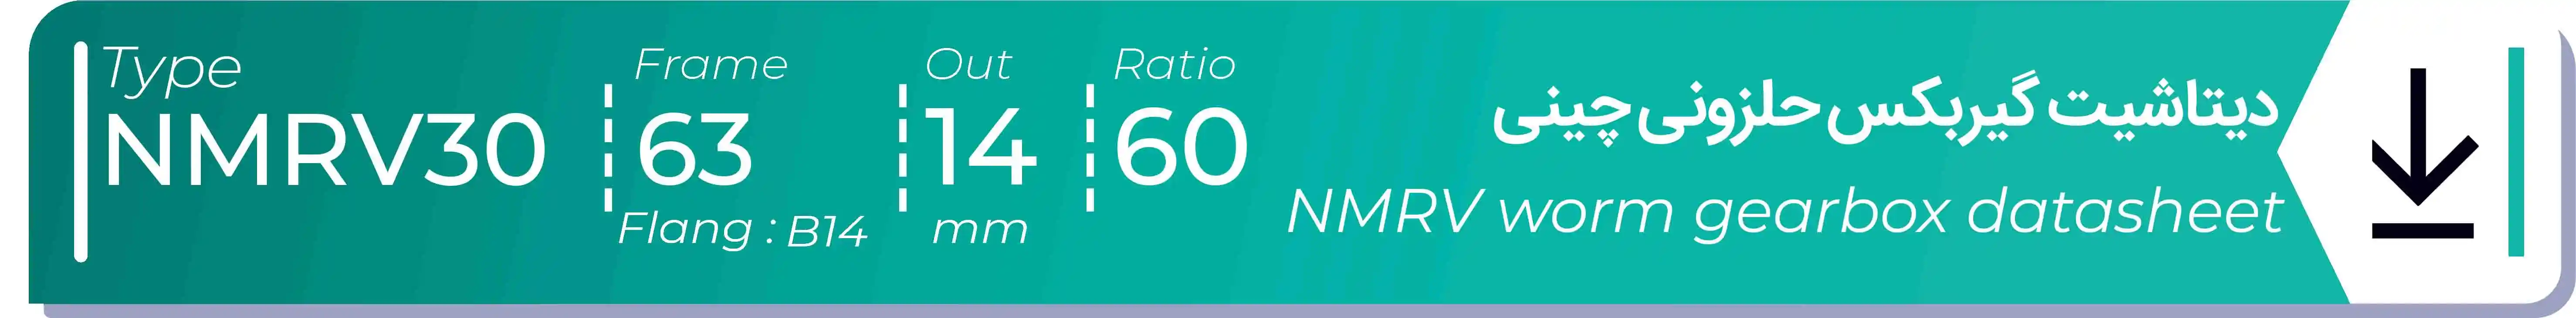  دیتاشیت و مشخصات فنی گیربکس حلزونی چینی   NMRV30  -  با خروجی 14- میلی متر و نسبت60